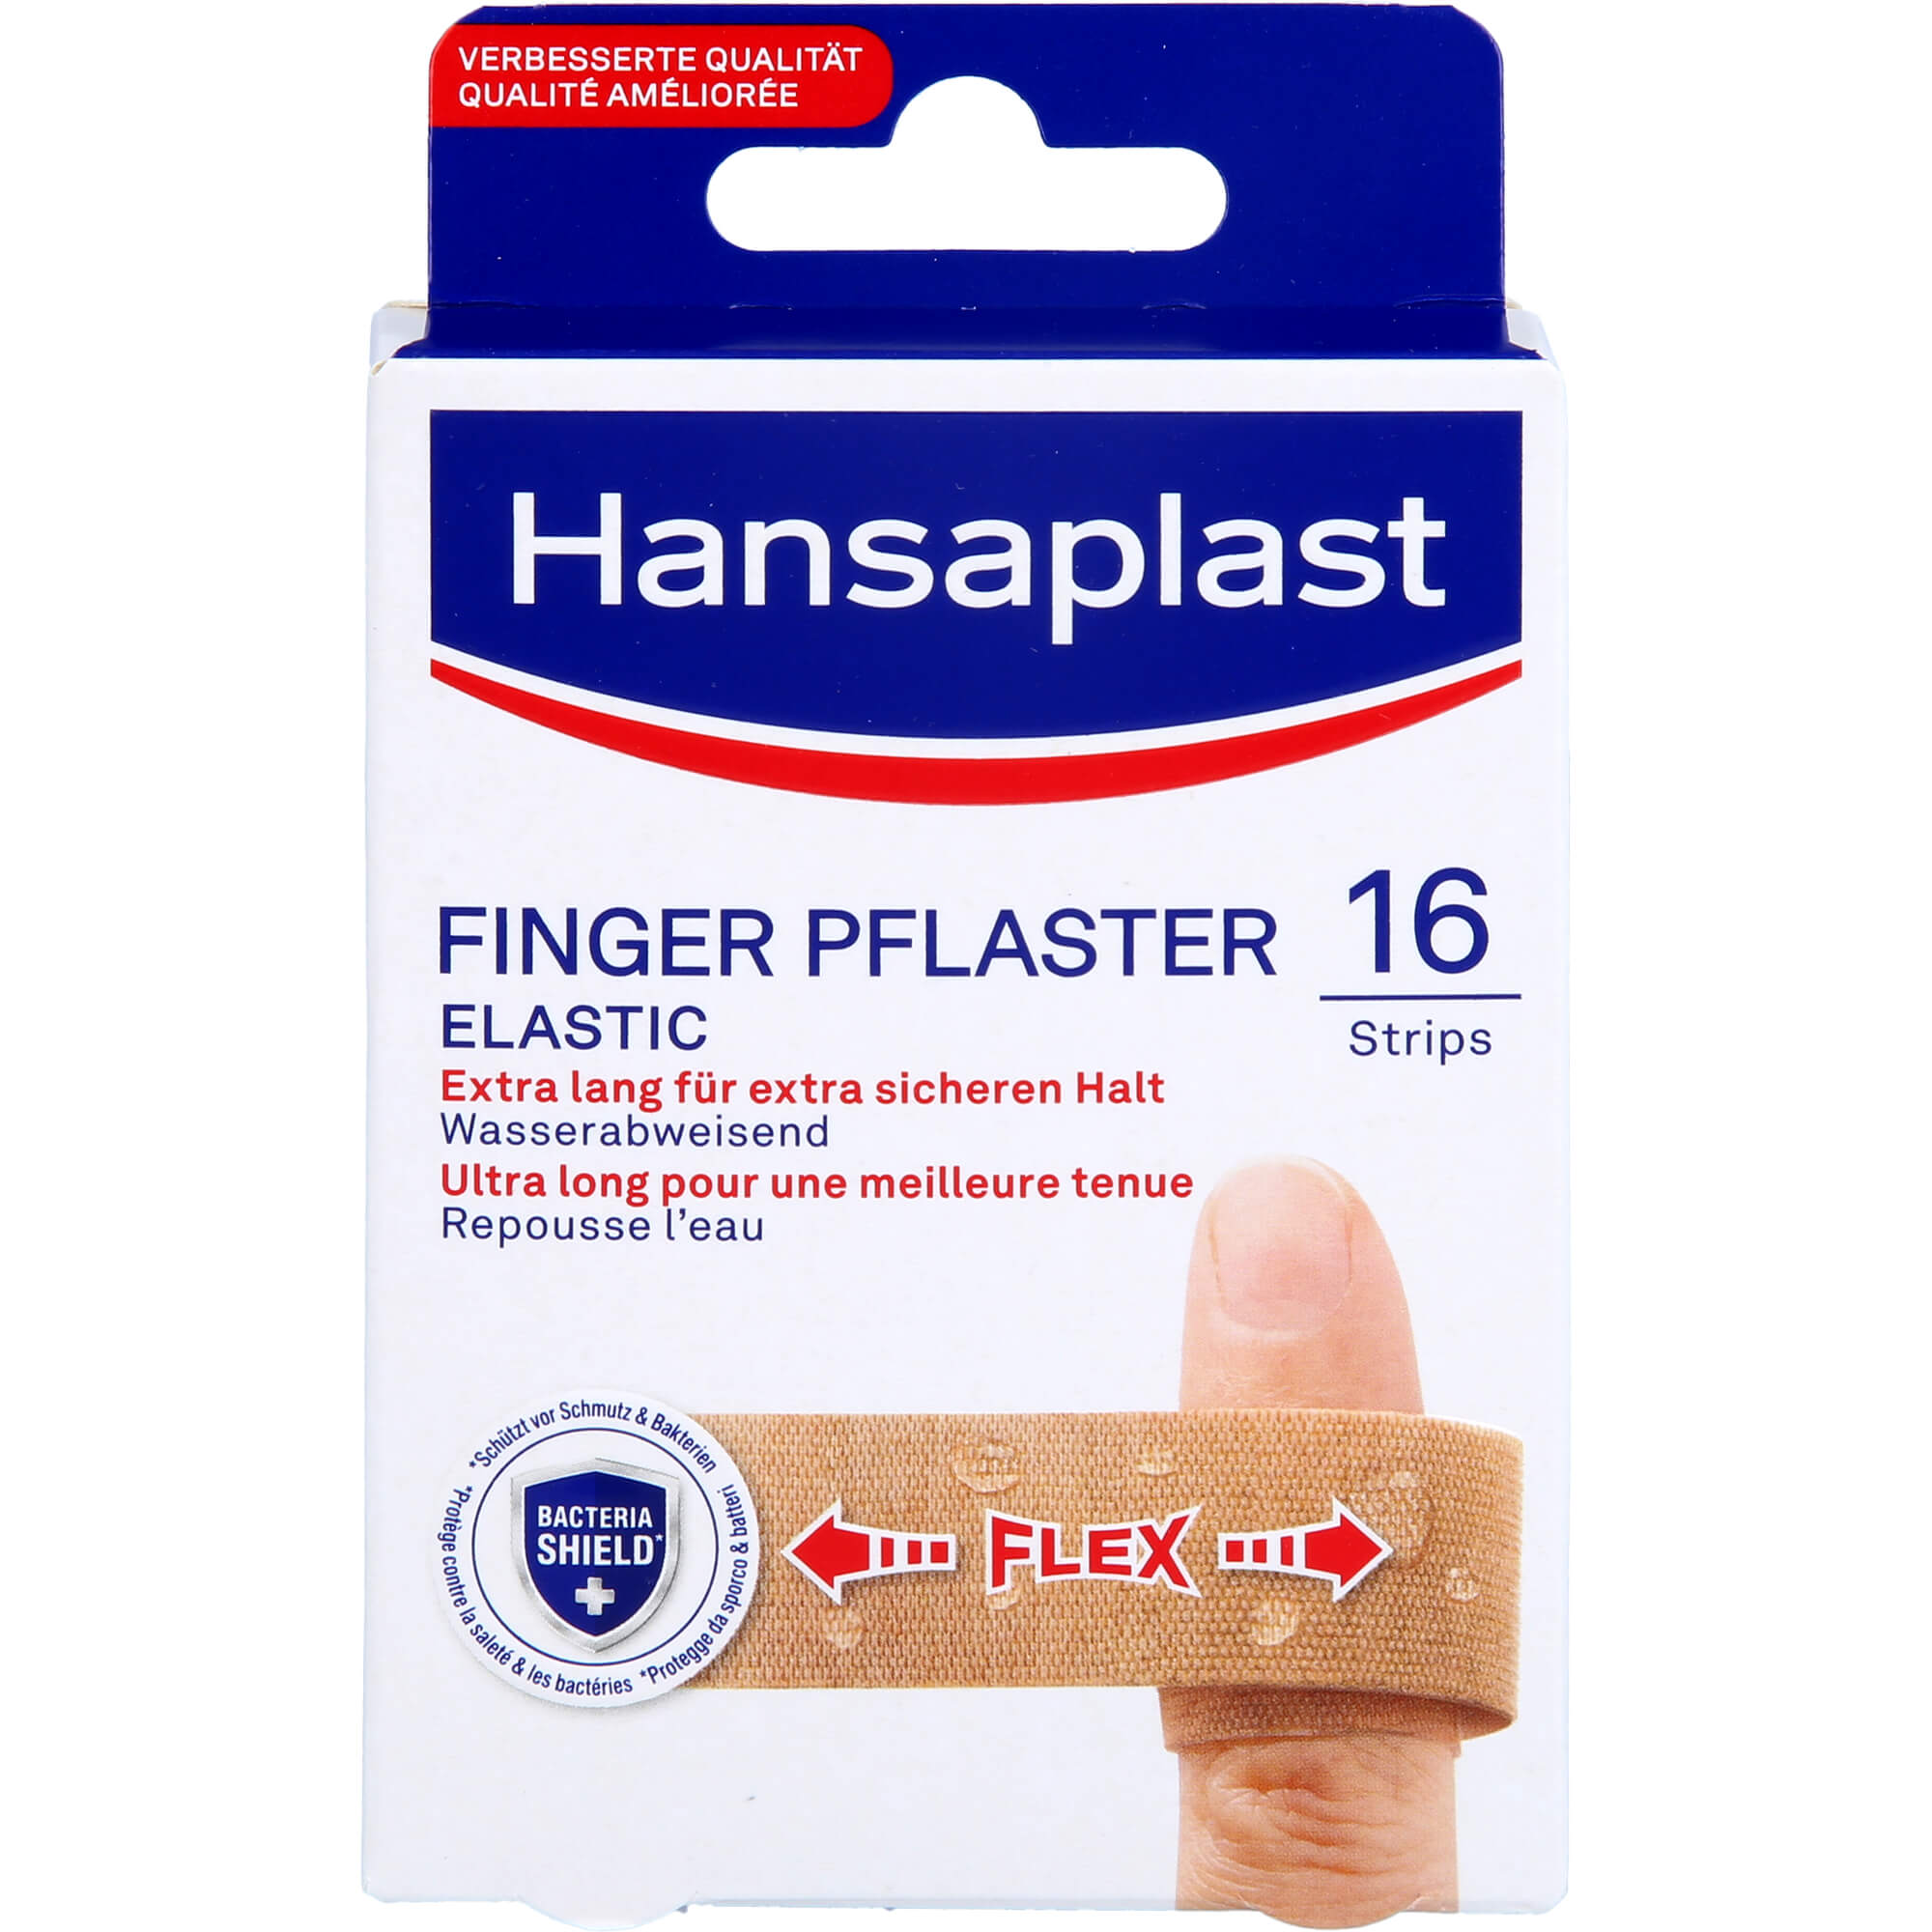 HANSAPLAST Elastic Finger Pflasterstrips - 16 St - 4,2 EUR